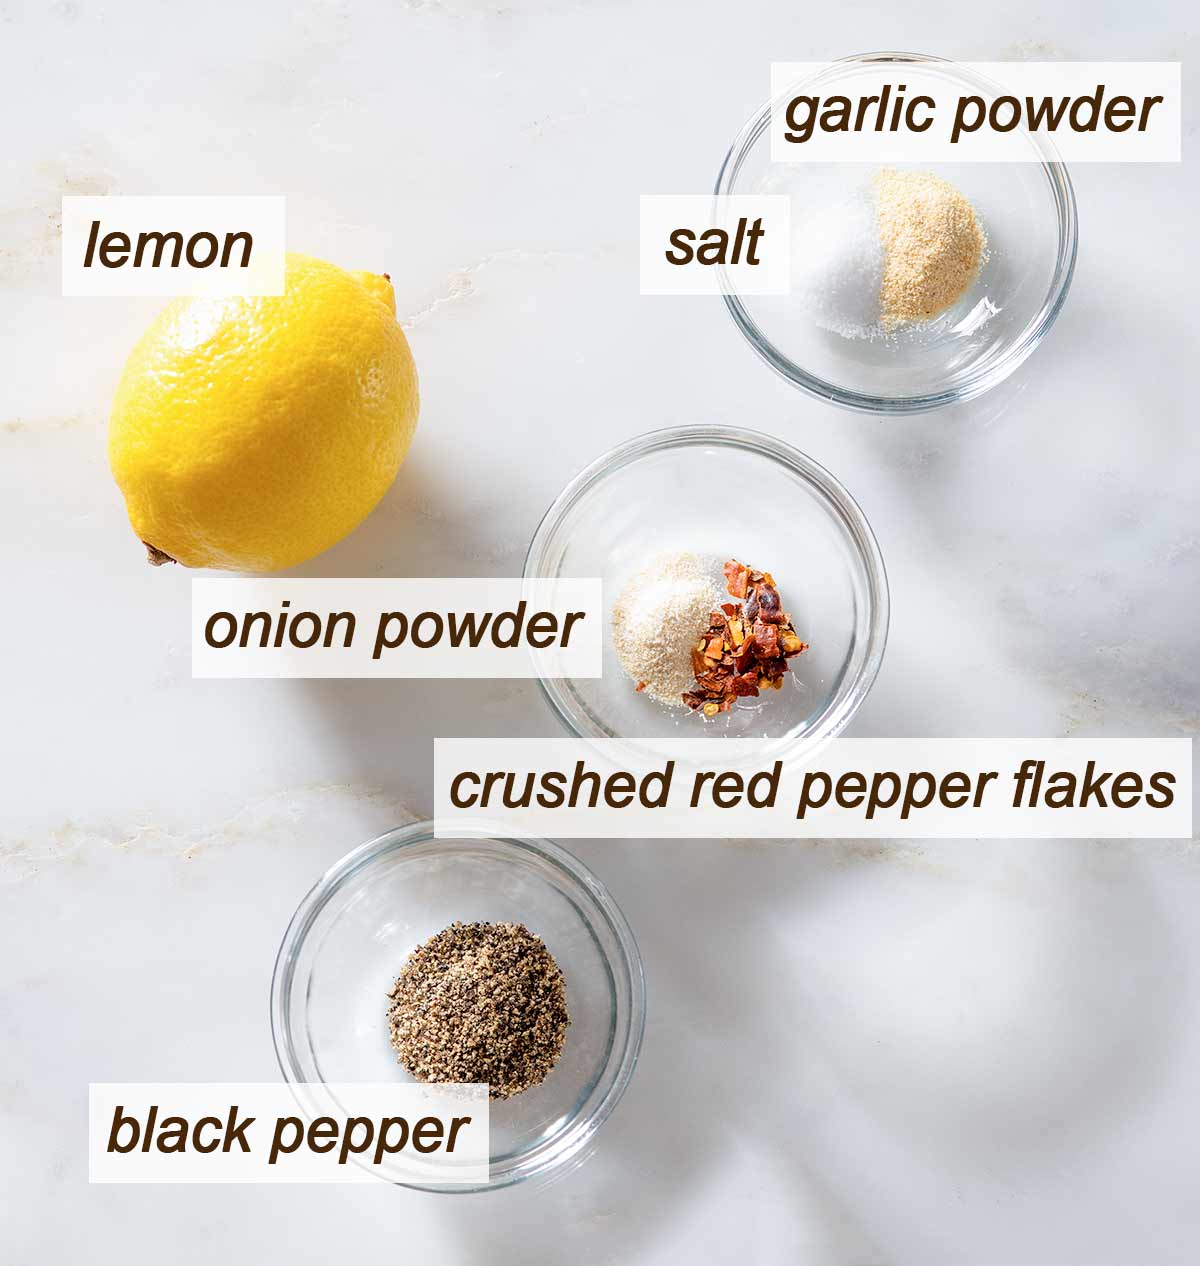 Lemon pepper chicken seasoning ingredients on a table.